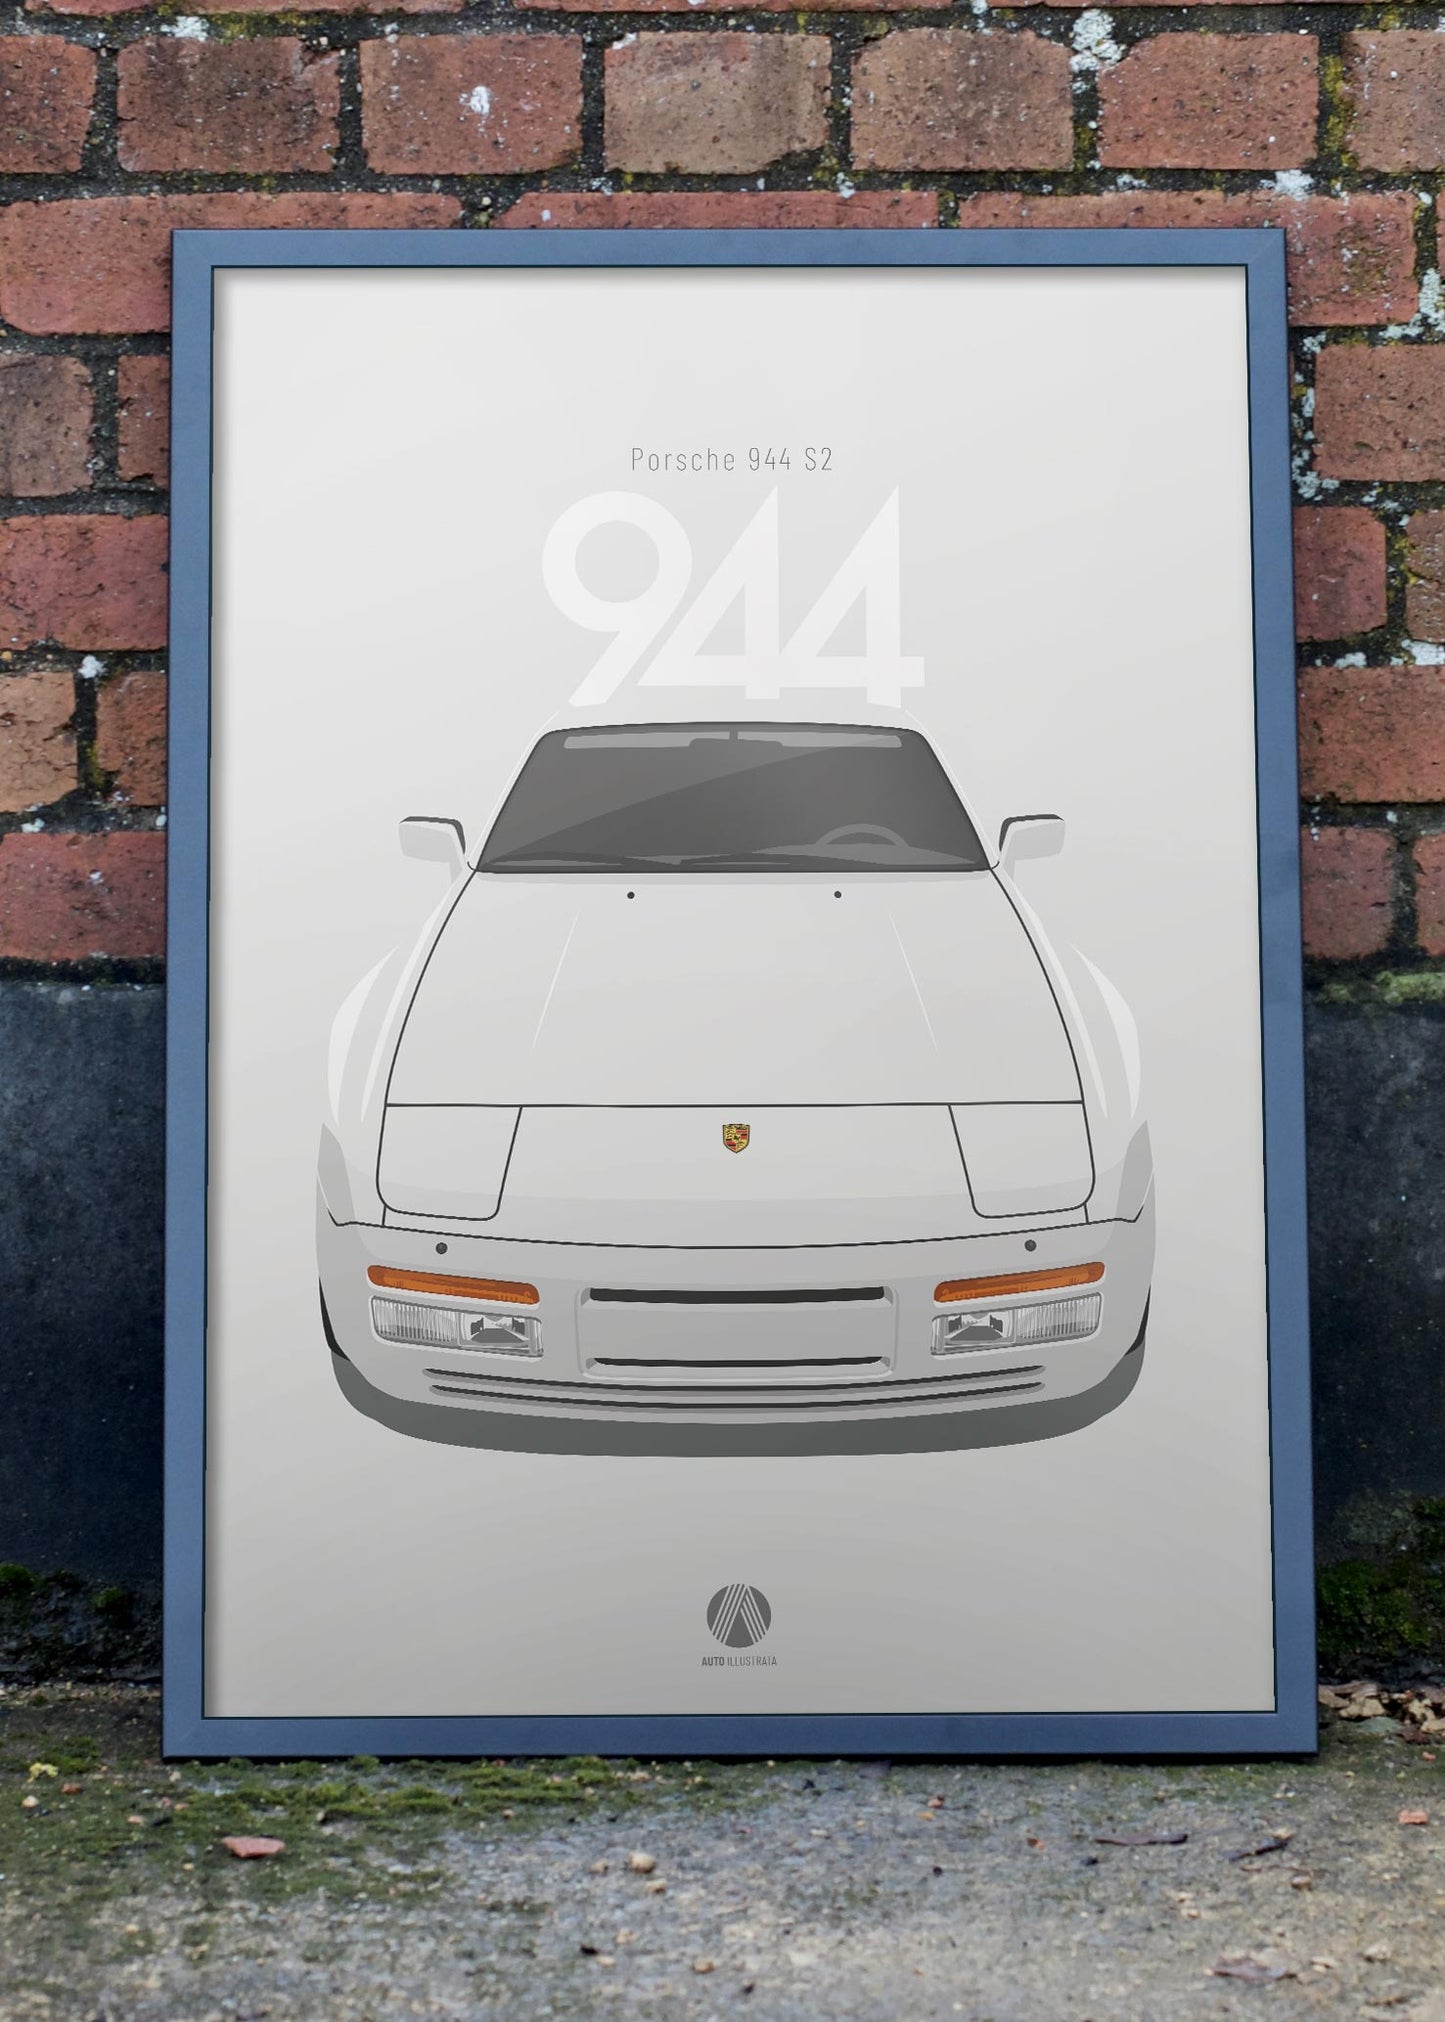 1989 Porsche 944 S2 - L90E Alpine White - poster print